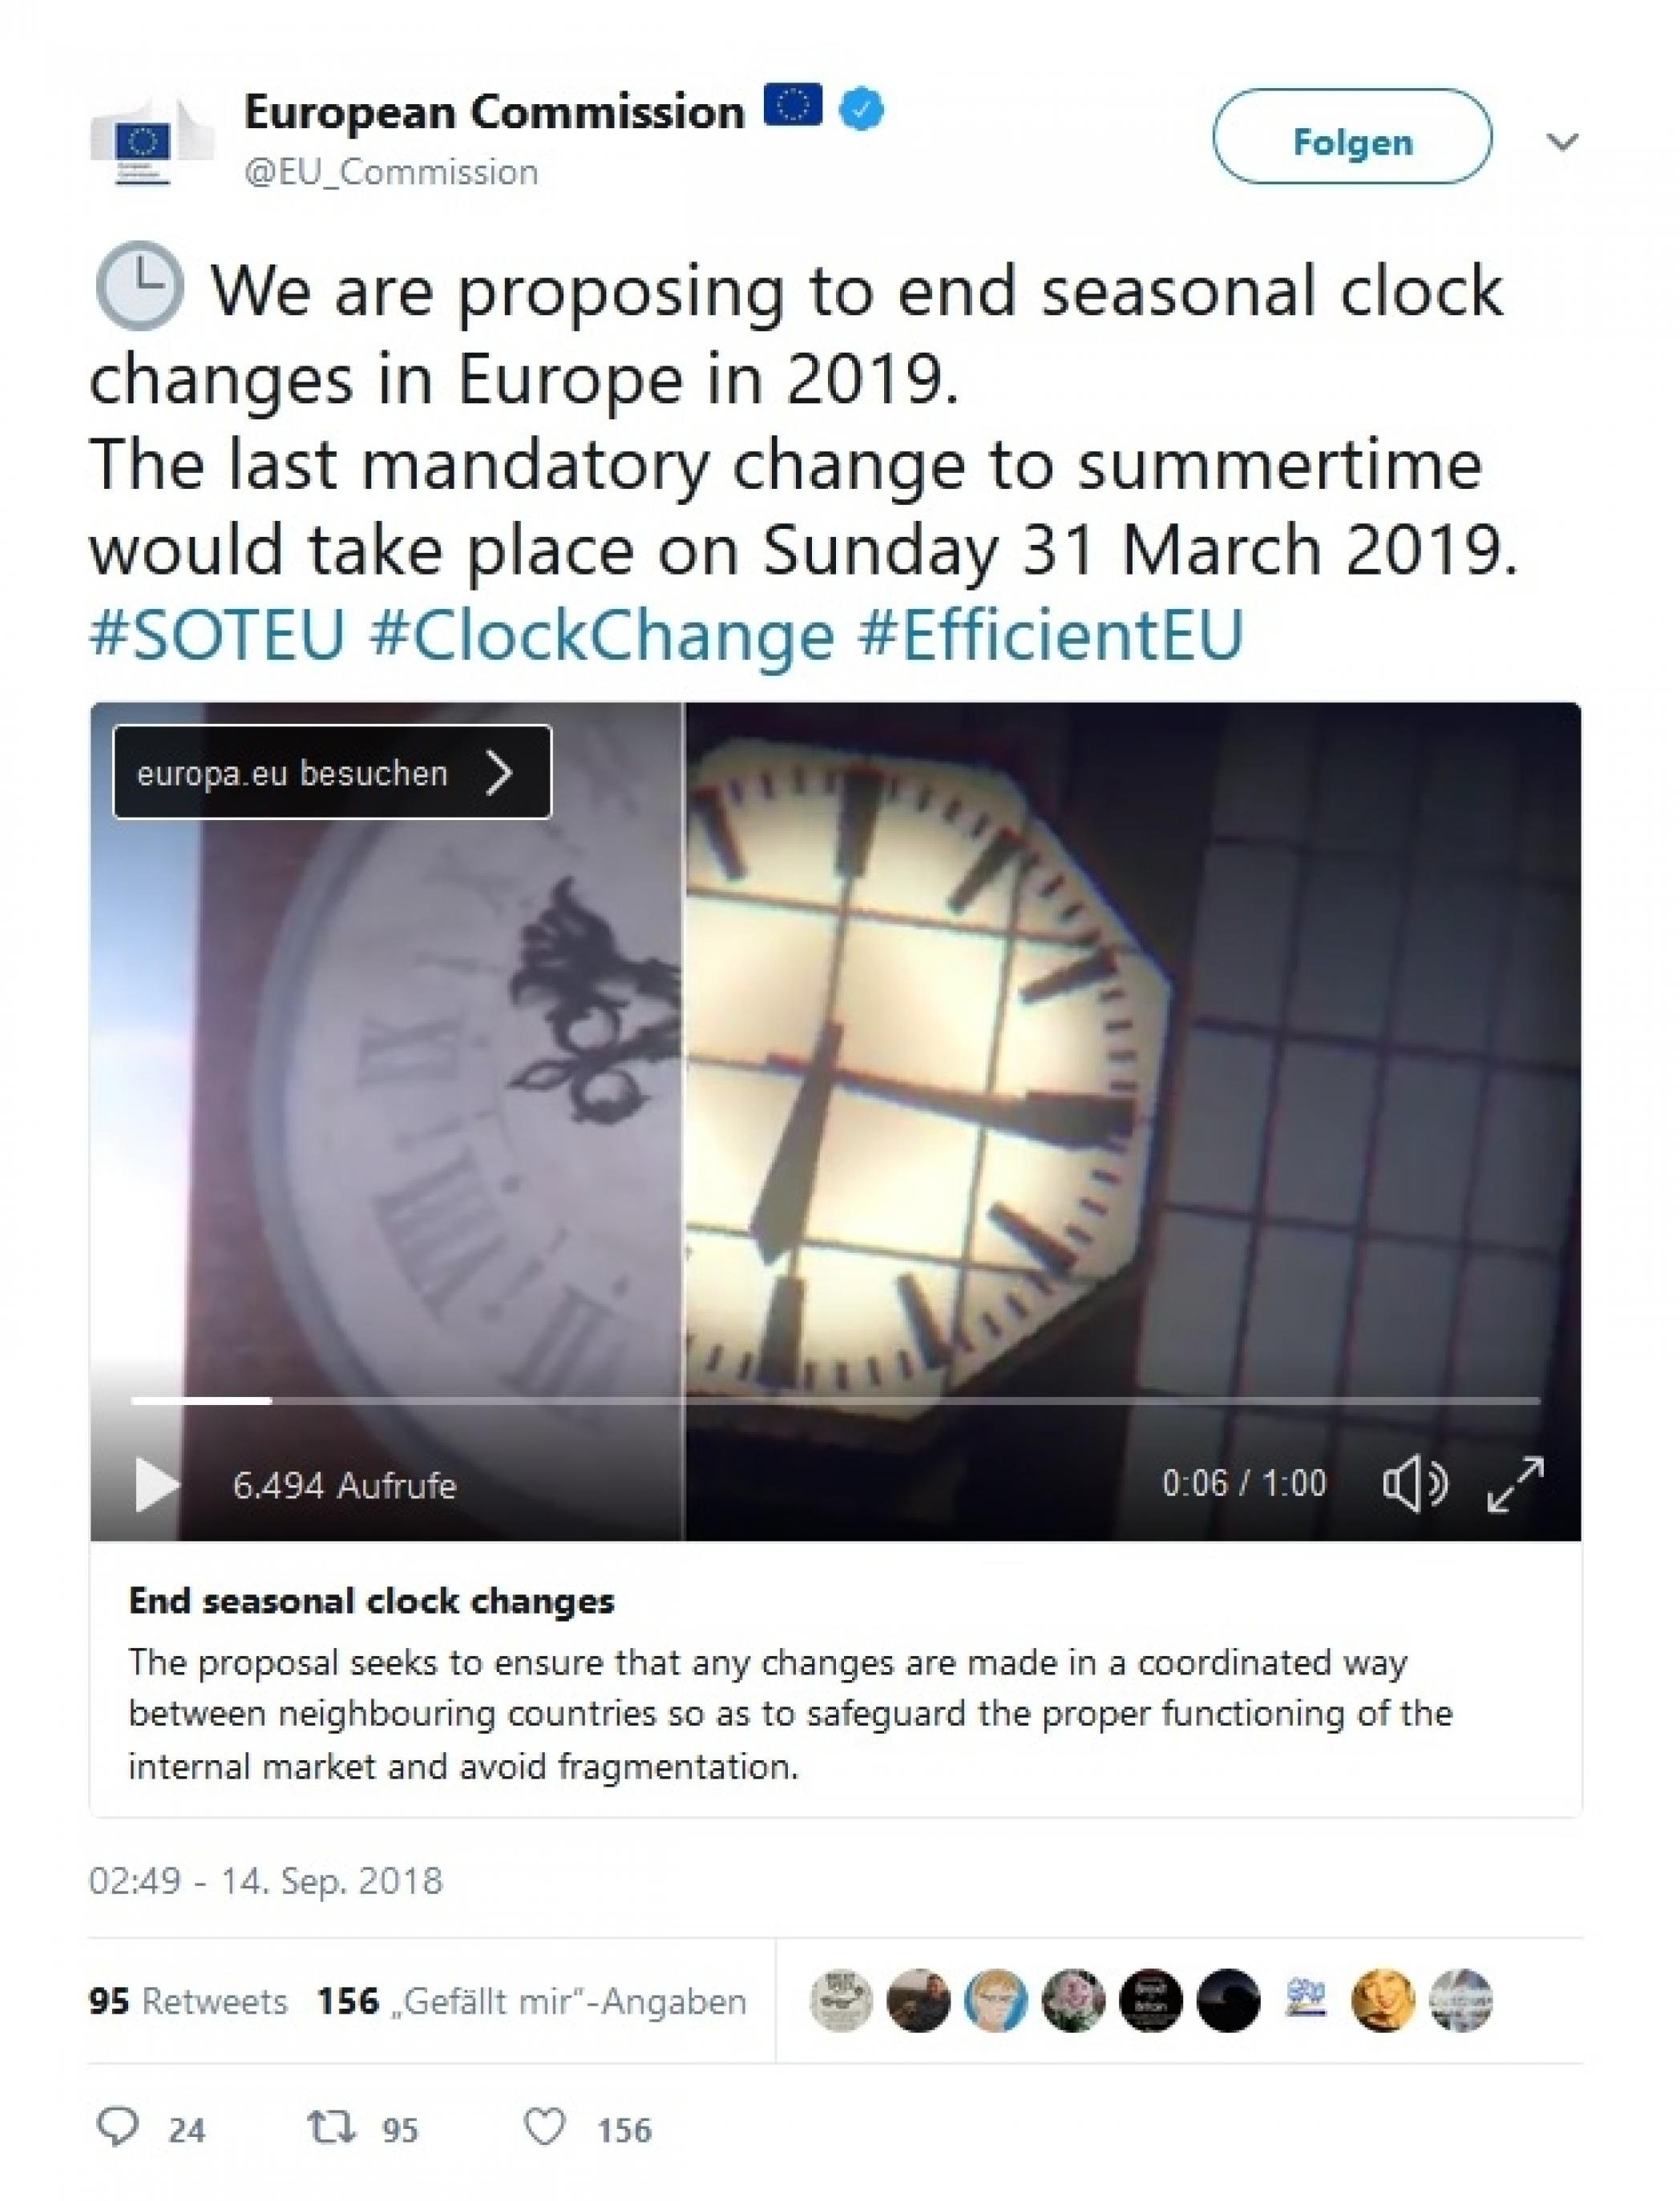 Die Kommission der EU twittert, dass sie die Zeitumstellung abschaffen möchte: „We are proposing to end seasonal clock changes.“